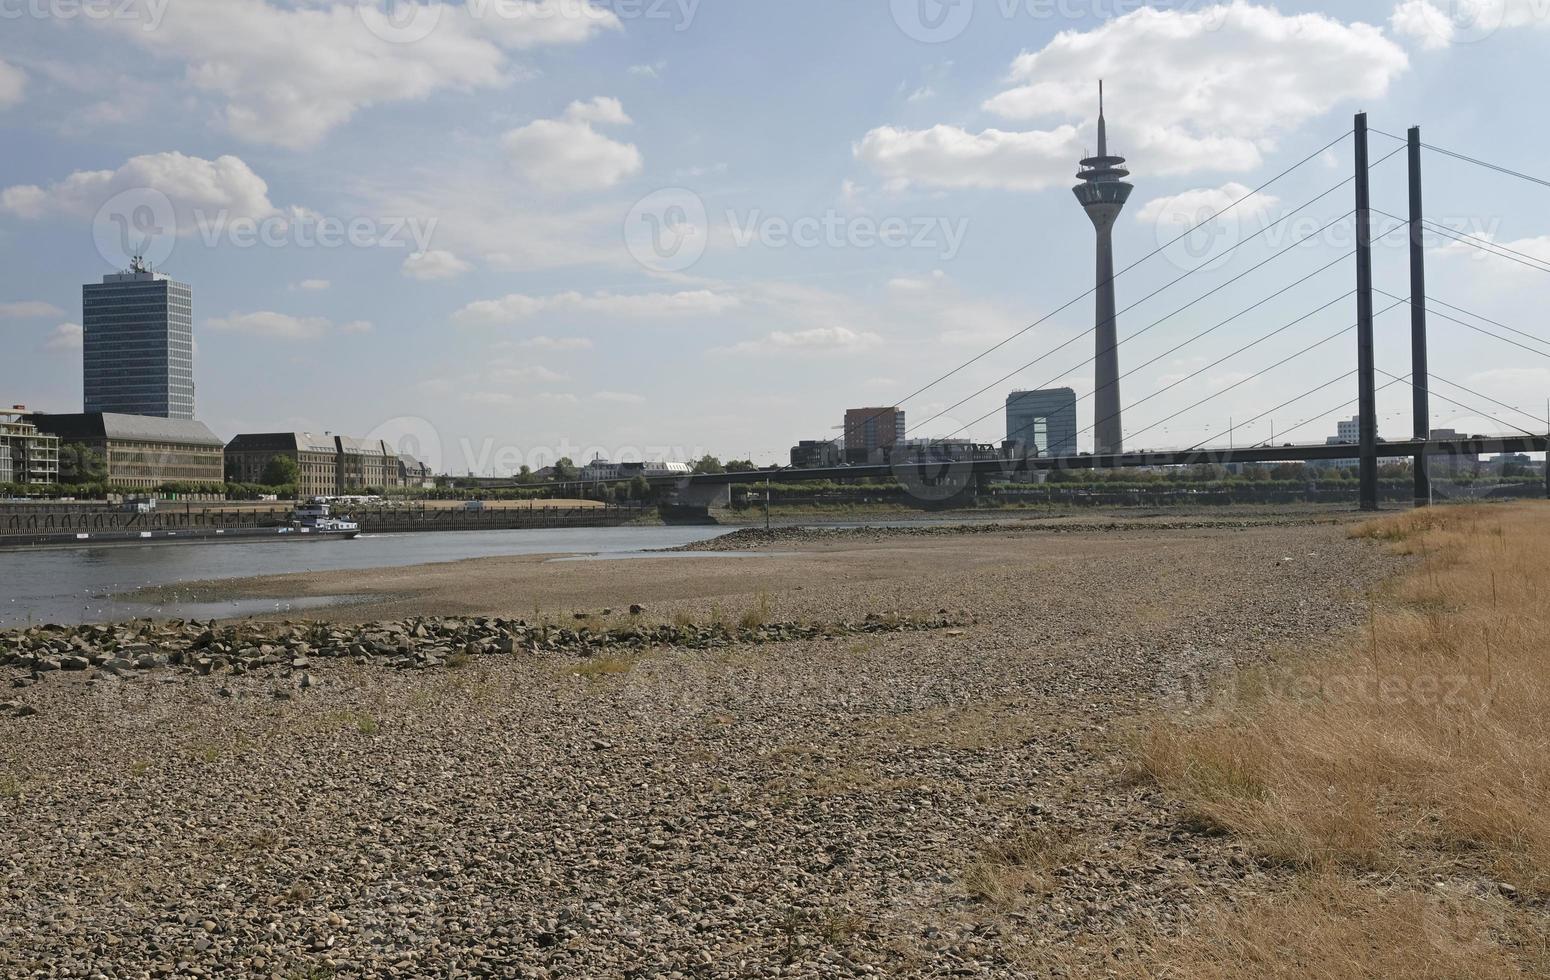 klimat förändra - de Rhen minskar och gräs vänder brun under en svår torka i Düsseldorf, Tyskland foto